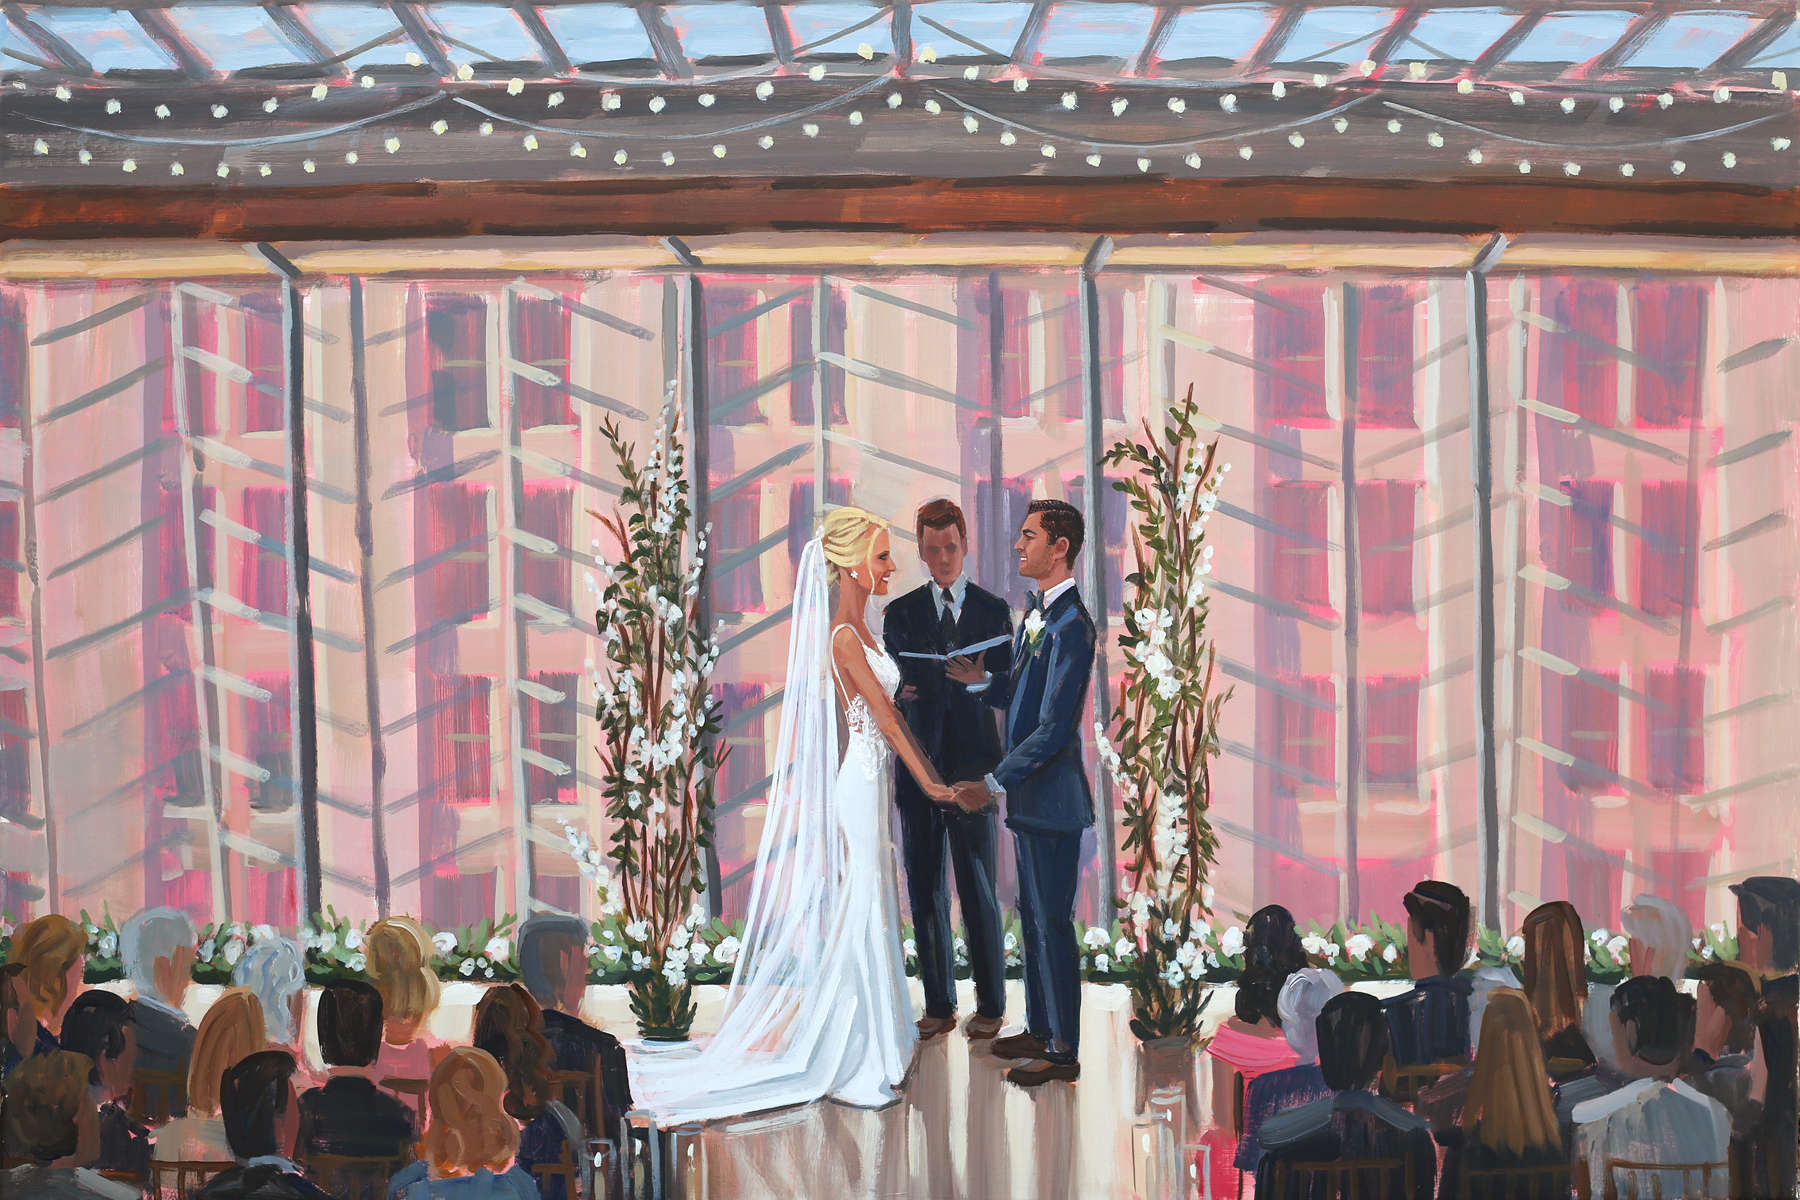 Live Wedding Painter, Ben Keys, captured E+M’s breathtaking ceremony held at the Hamilton Garden inside Philadelphia’s Kimmel Center.